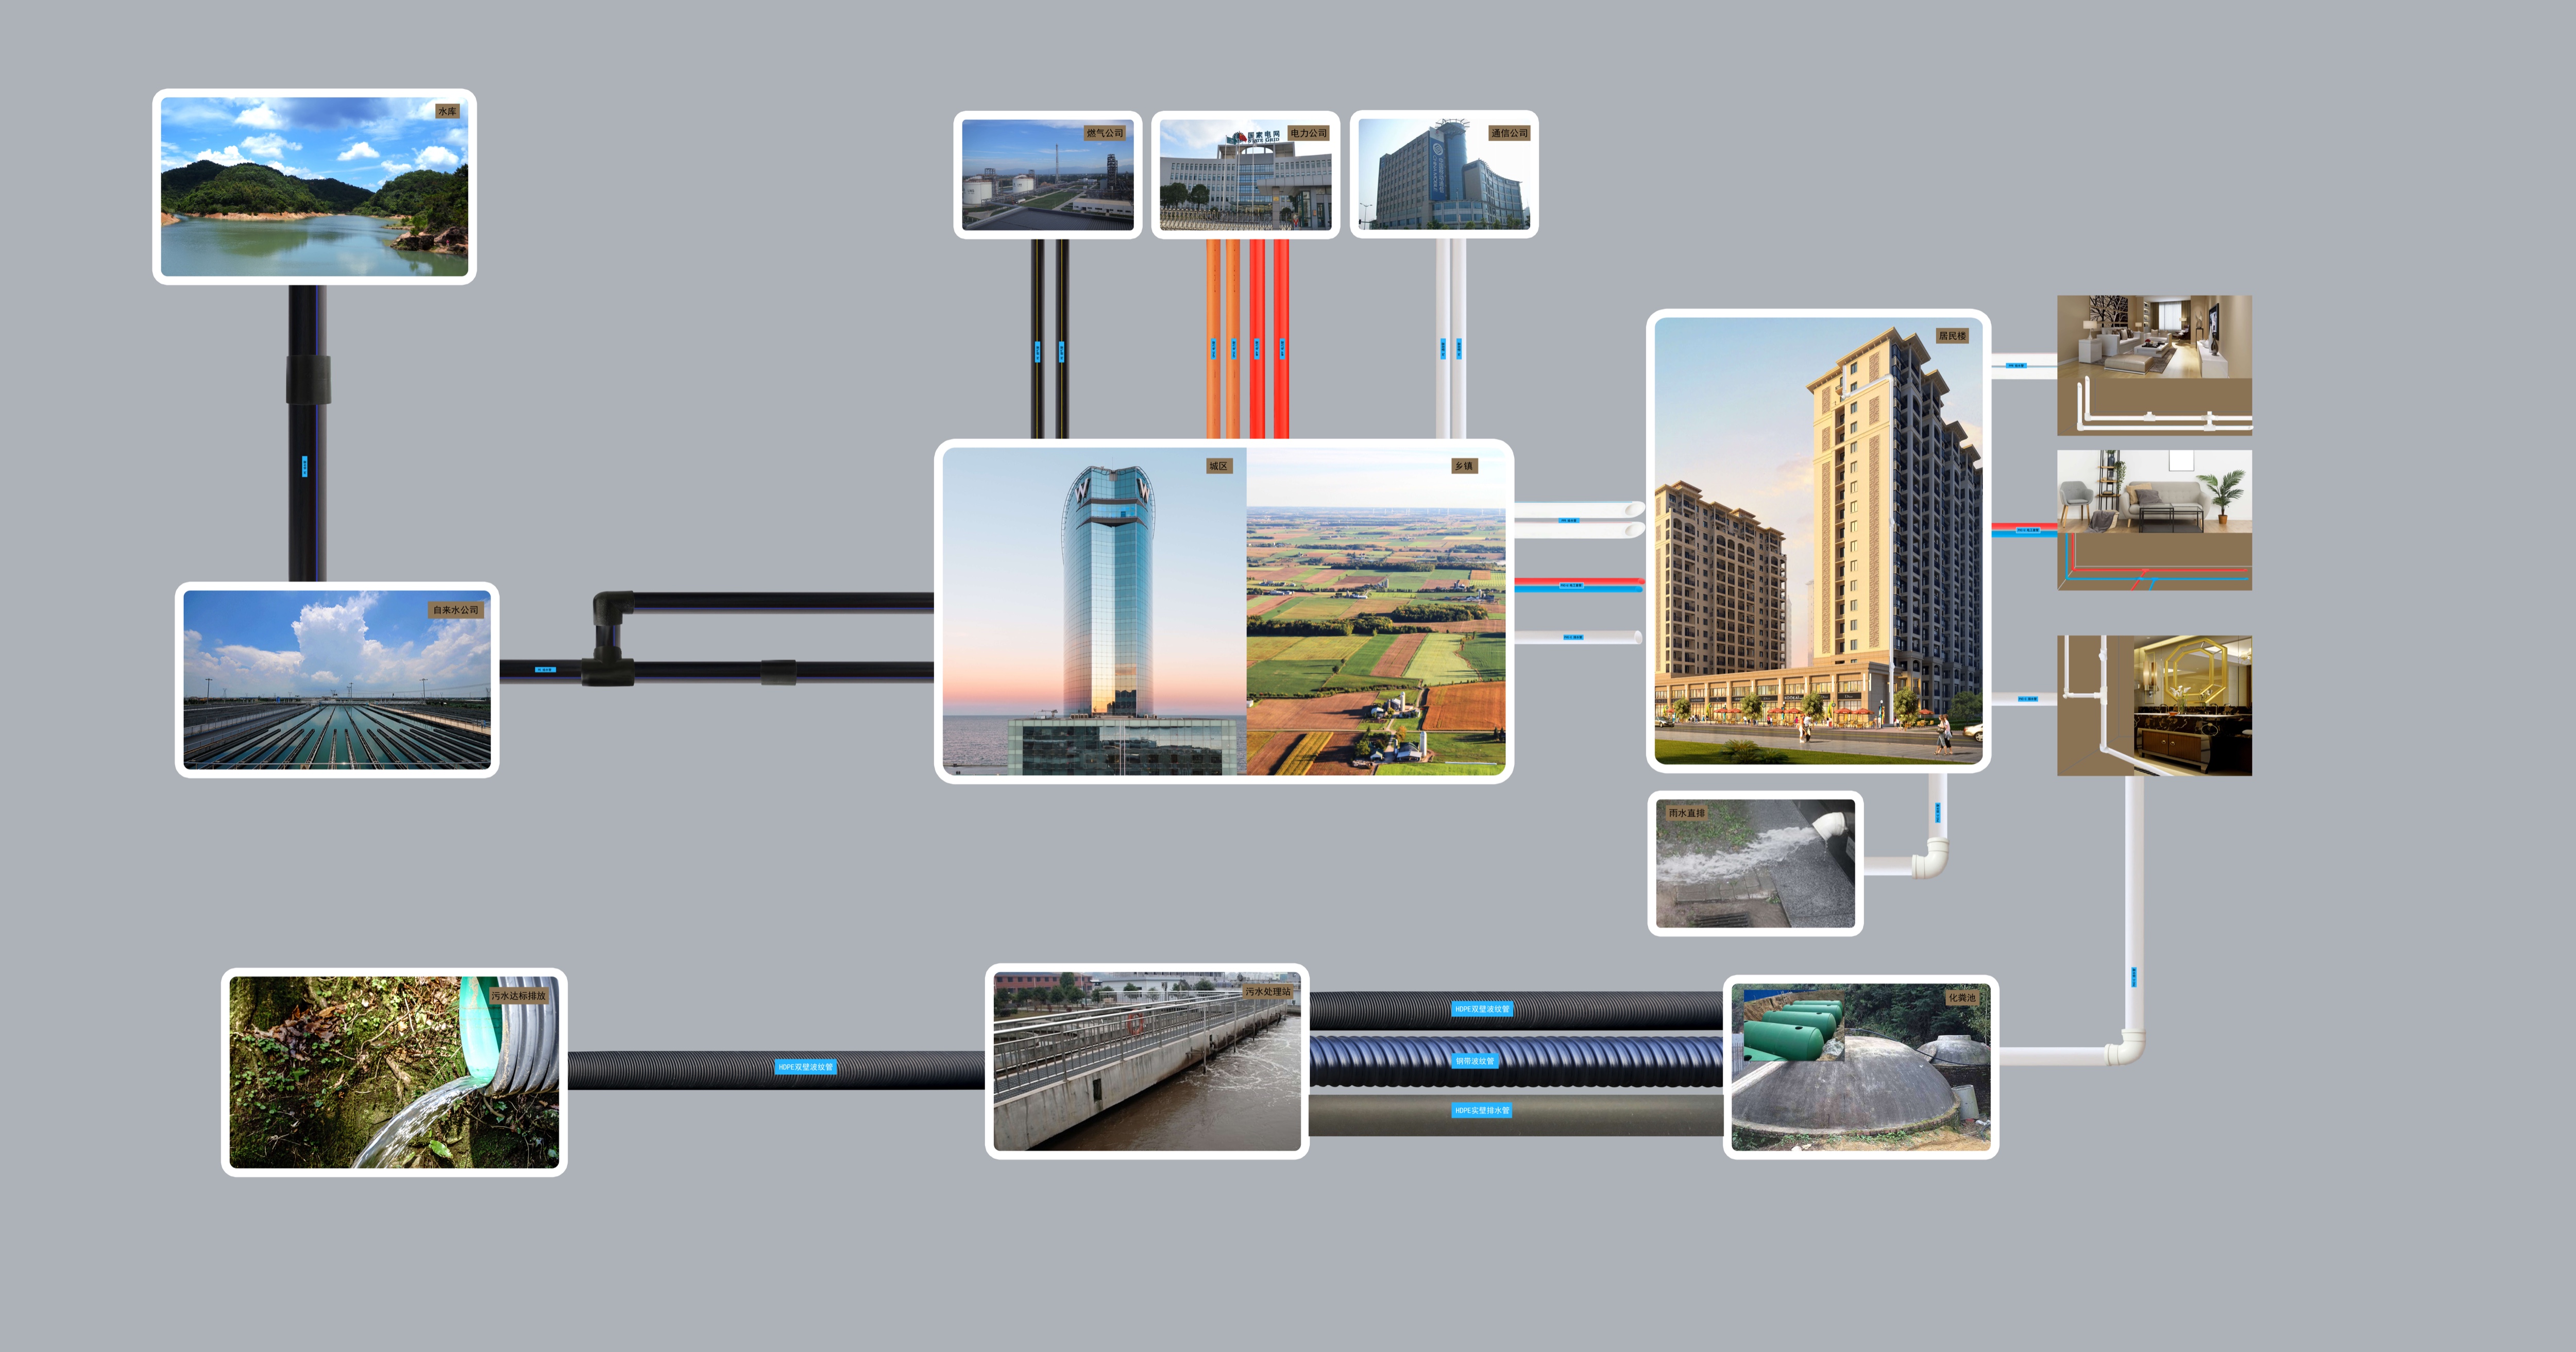 安徽w66利来国际管业集团,PE管、MPP管、PVC管、PE给水管等管材